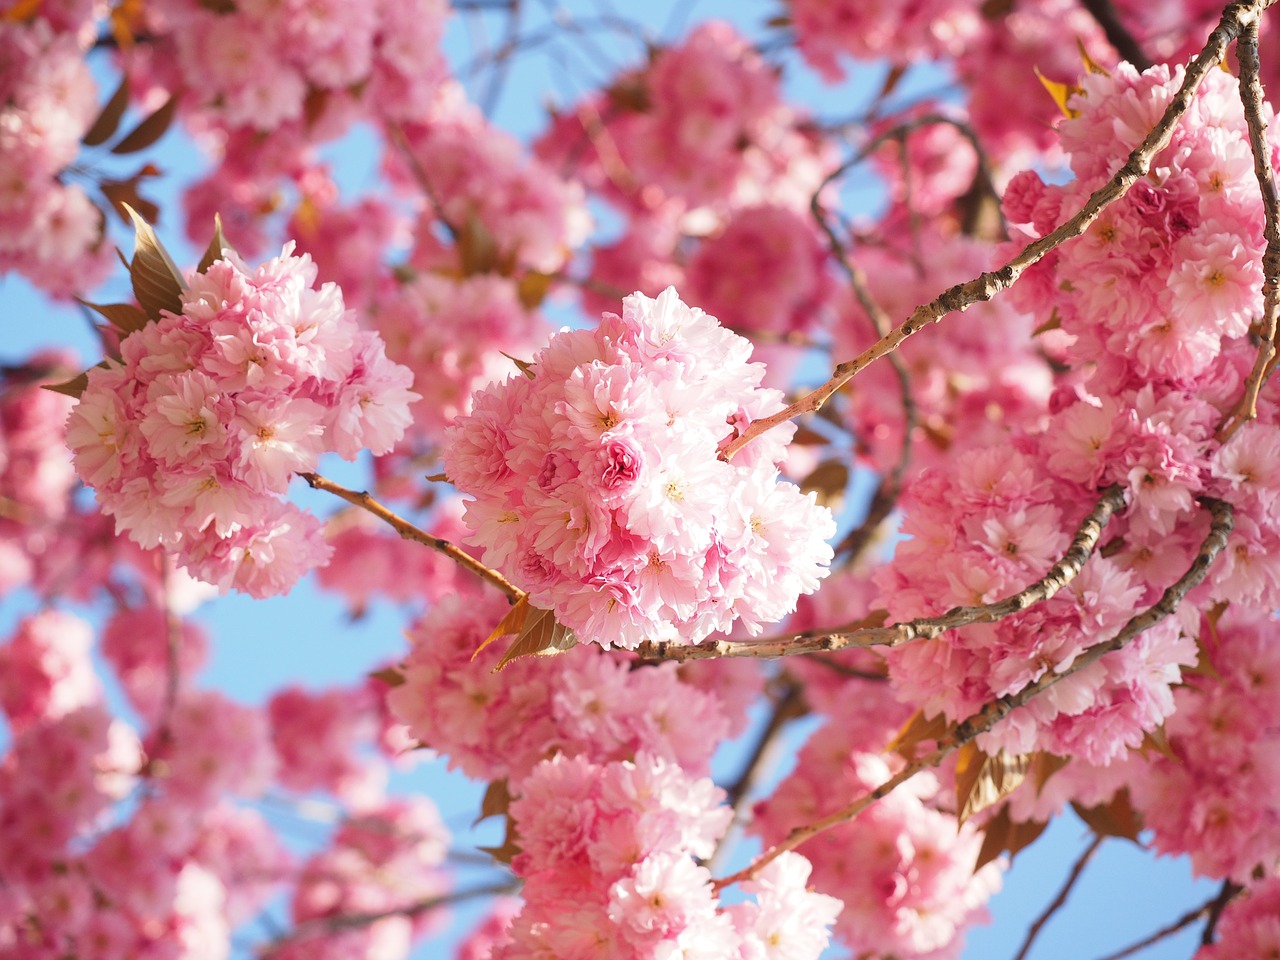 ветки сакуры с цветочками